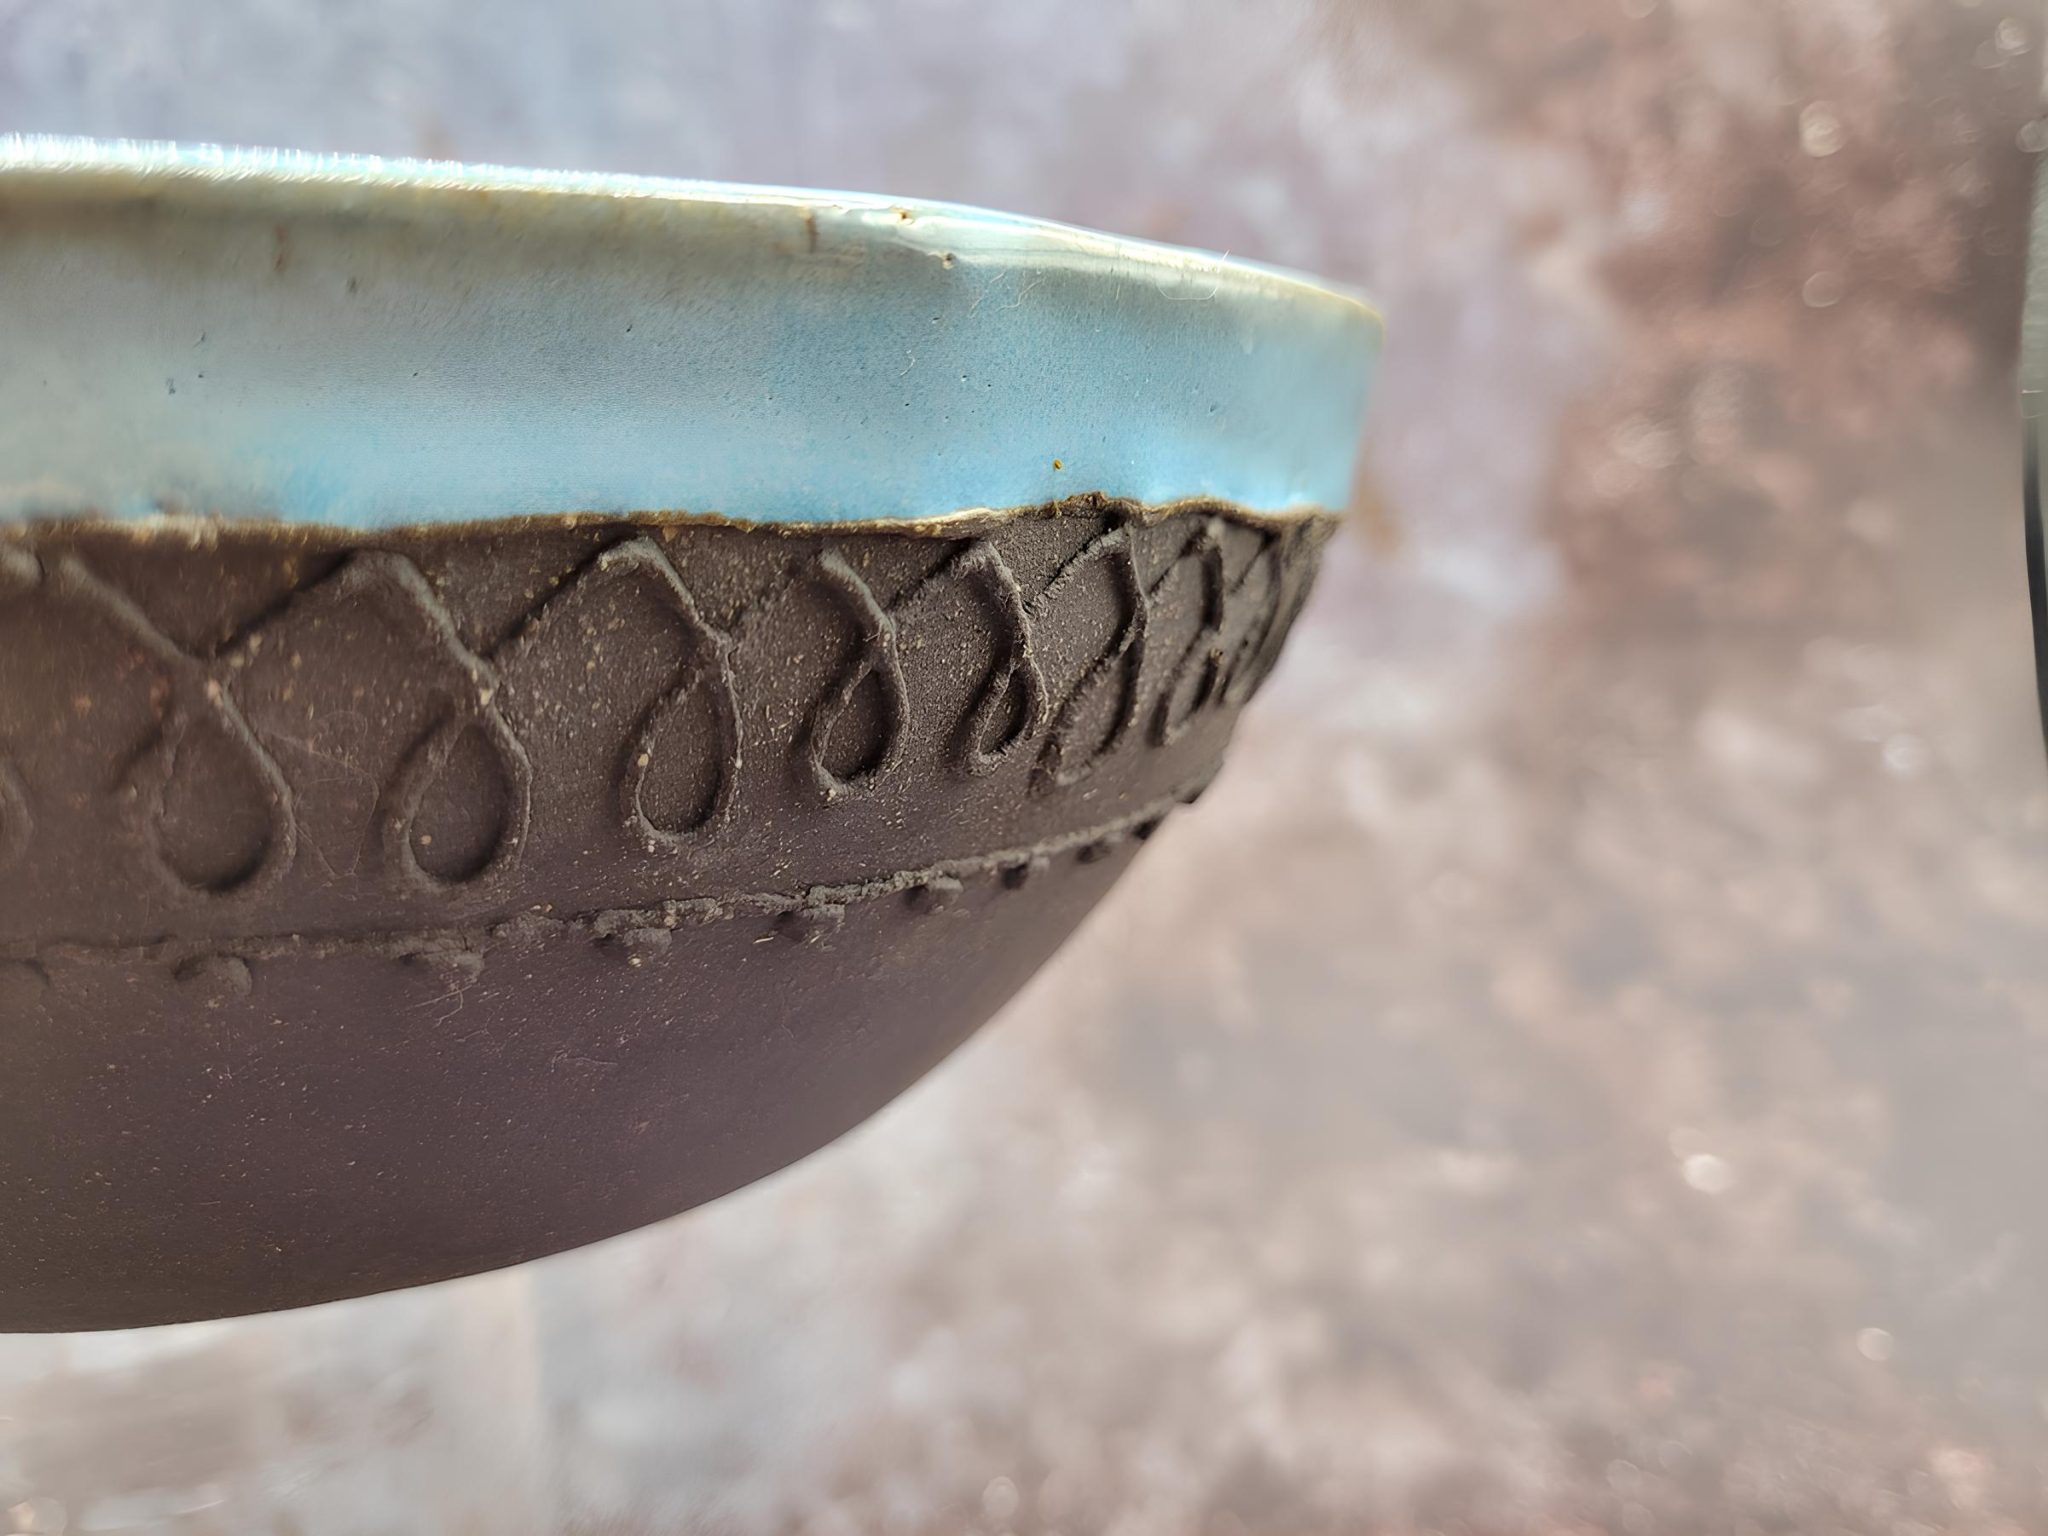 Aiwa Ceramics: keramika, ki navdih črpa iz narave in potovalnih vtisov